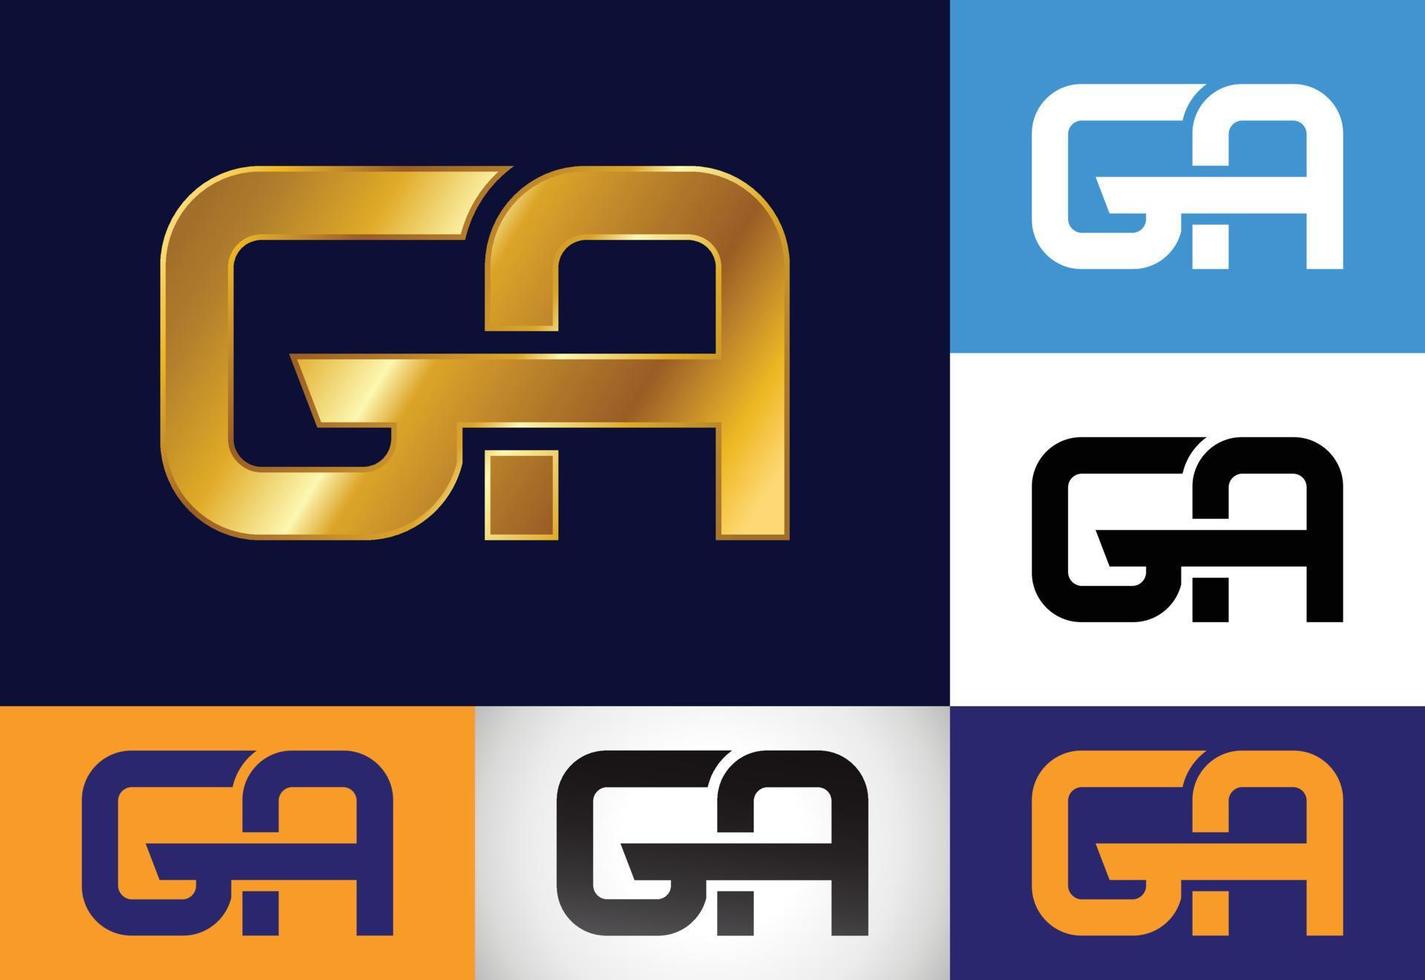 eerste brief g een logo ontwerp vector. grafisch alfabet symbool voor zakelijke bedrijf identiteit vector